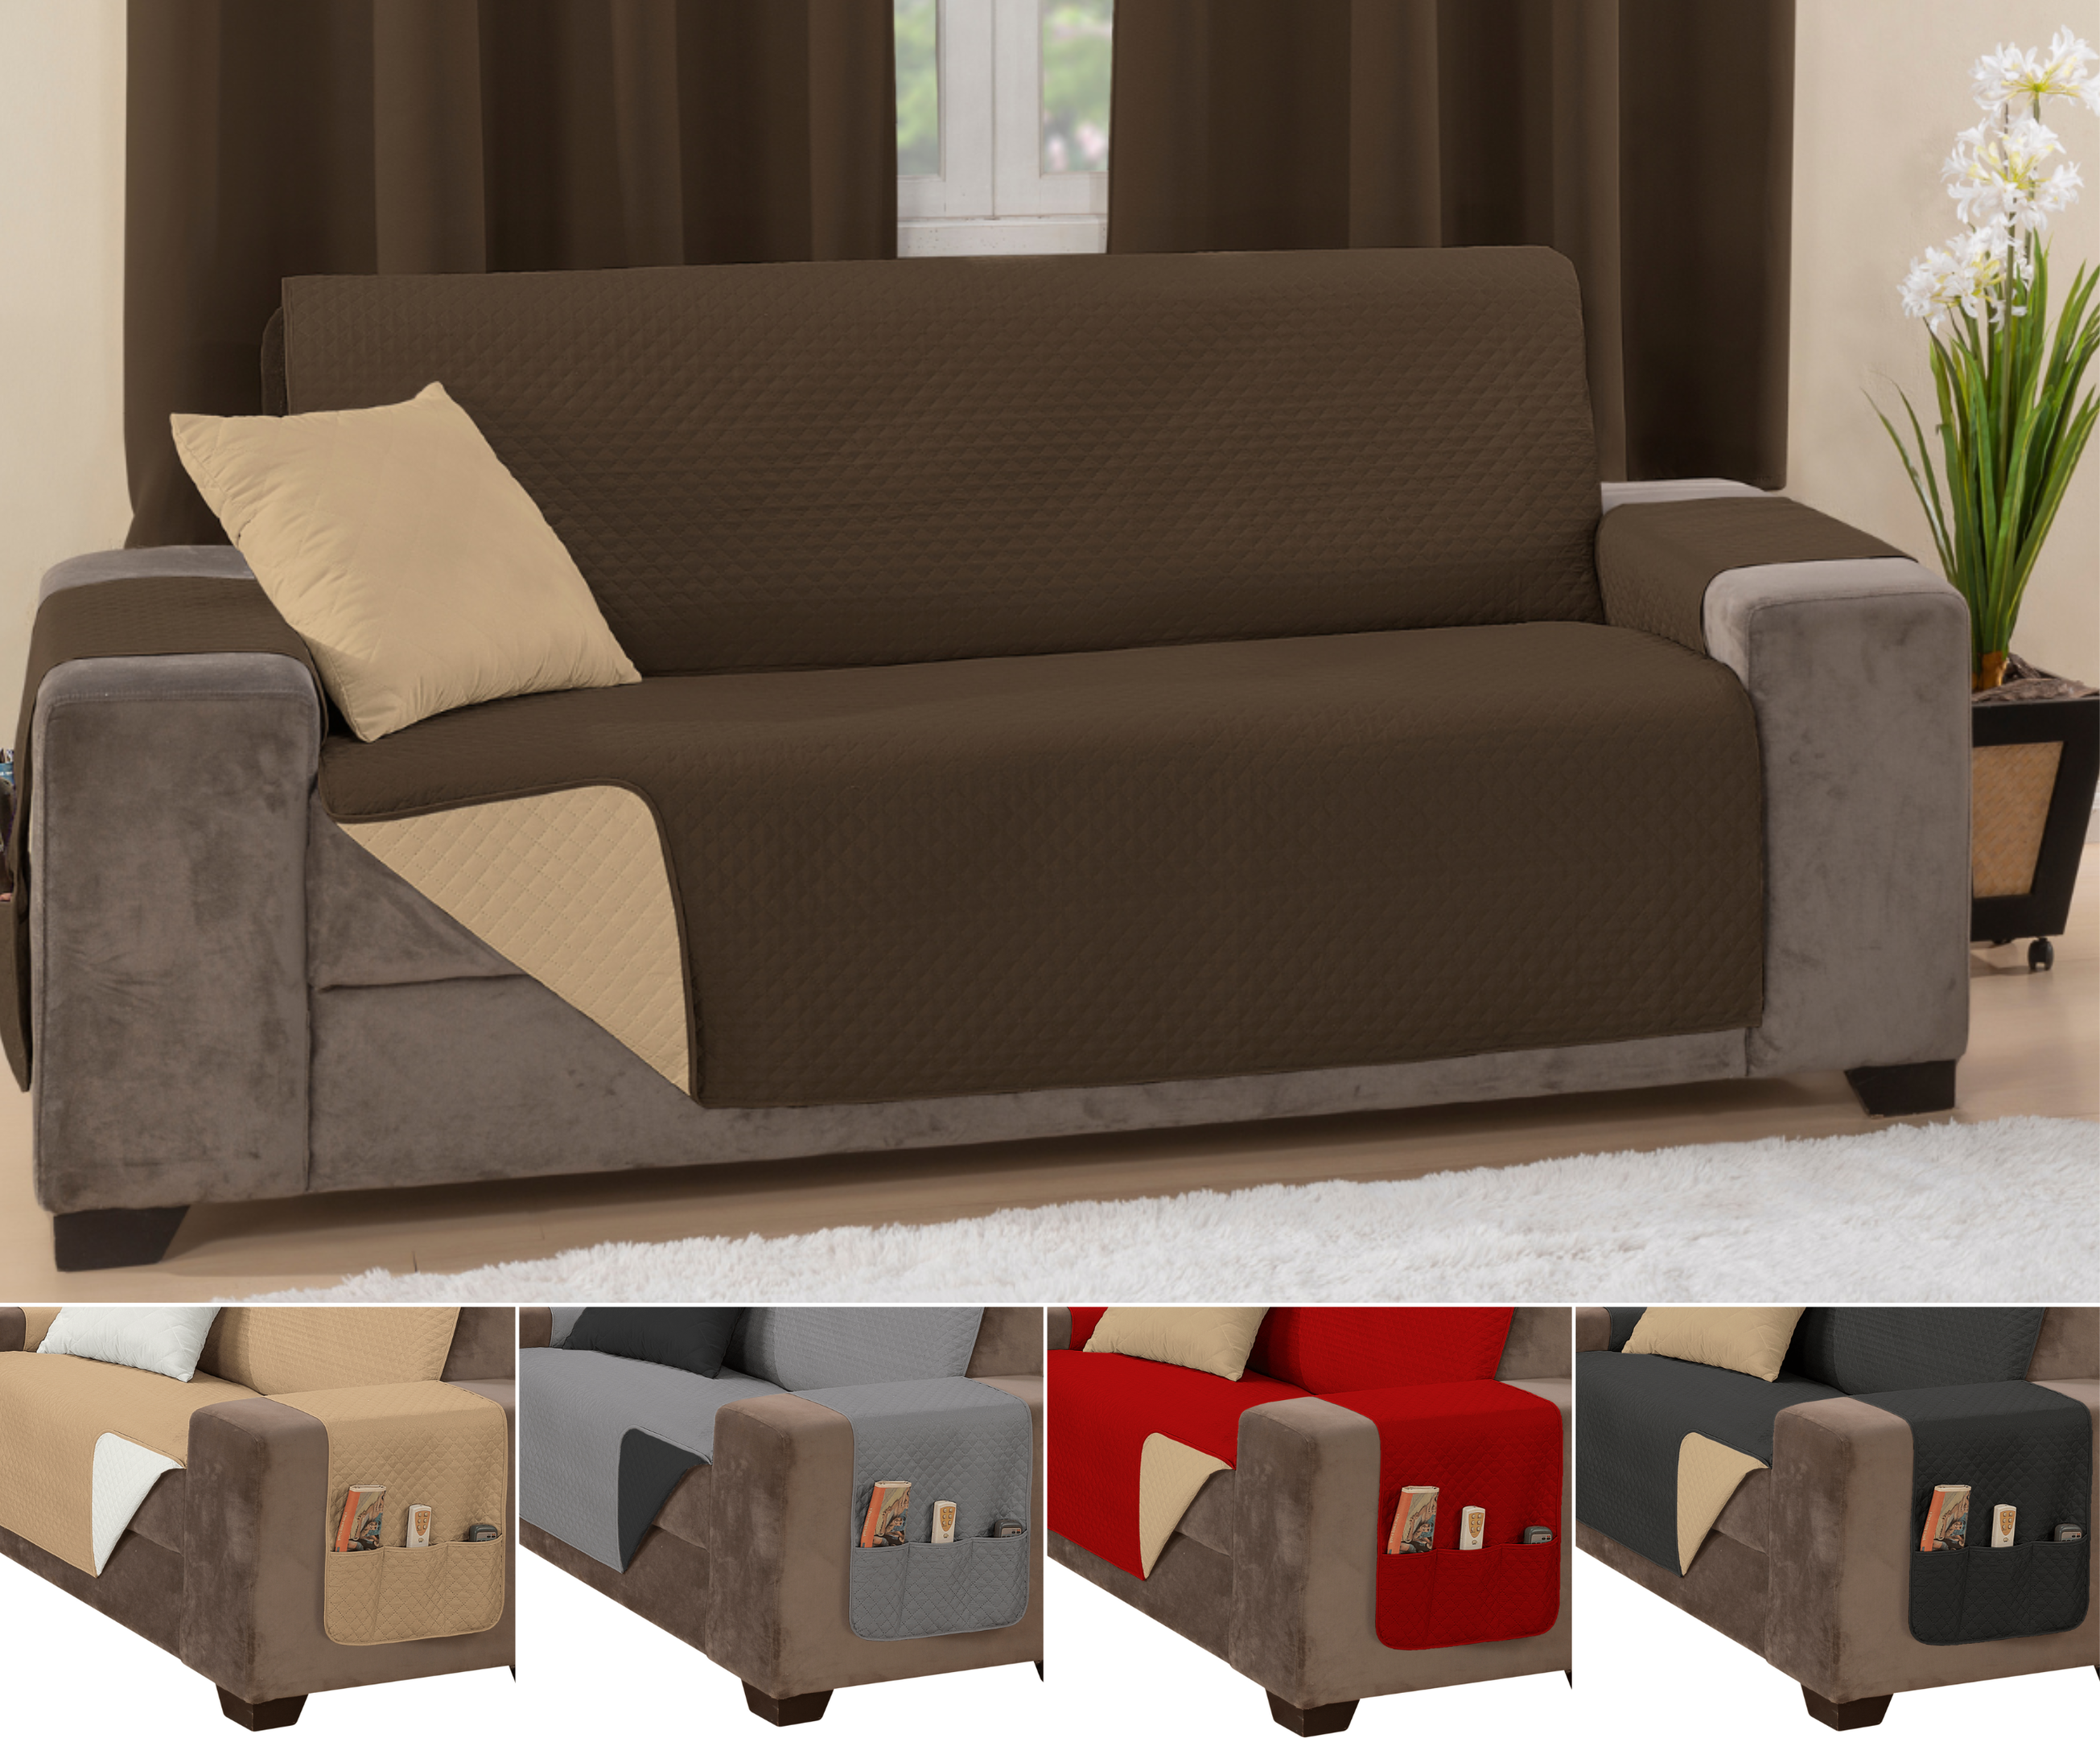 Capa sofá impermeavel ultrassonico tamanho padrão 2 lugares 1,1m marrom e caqui